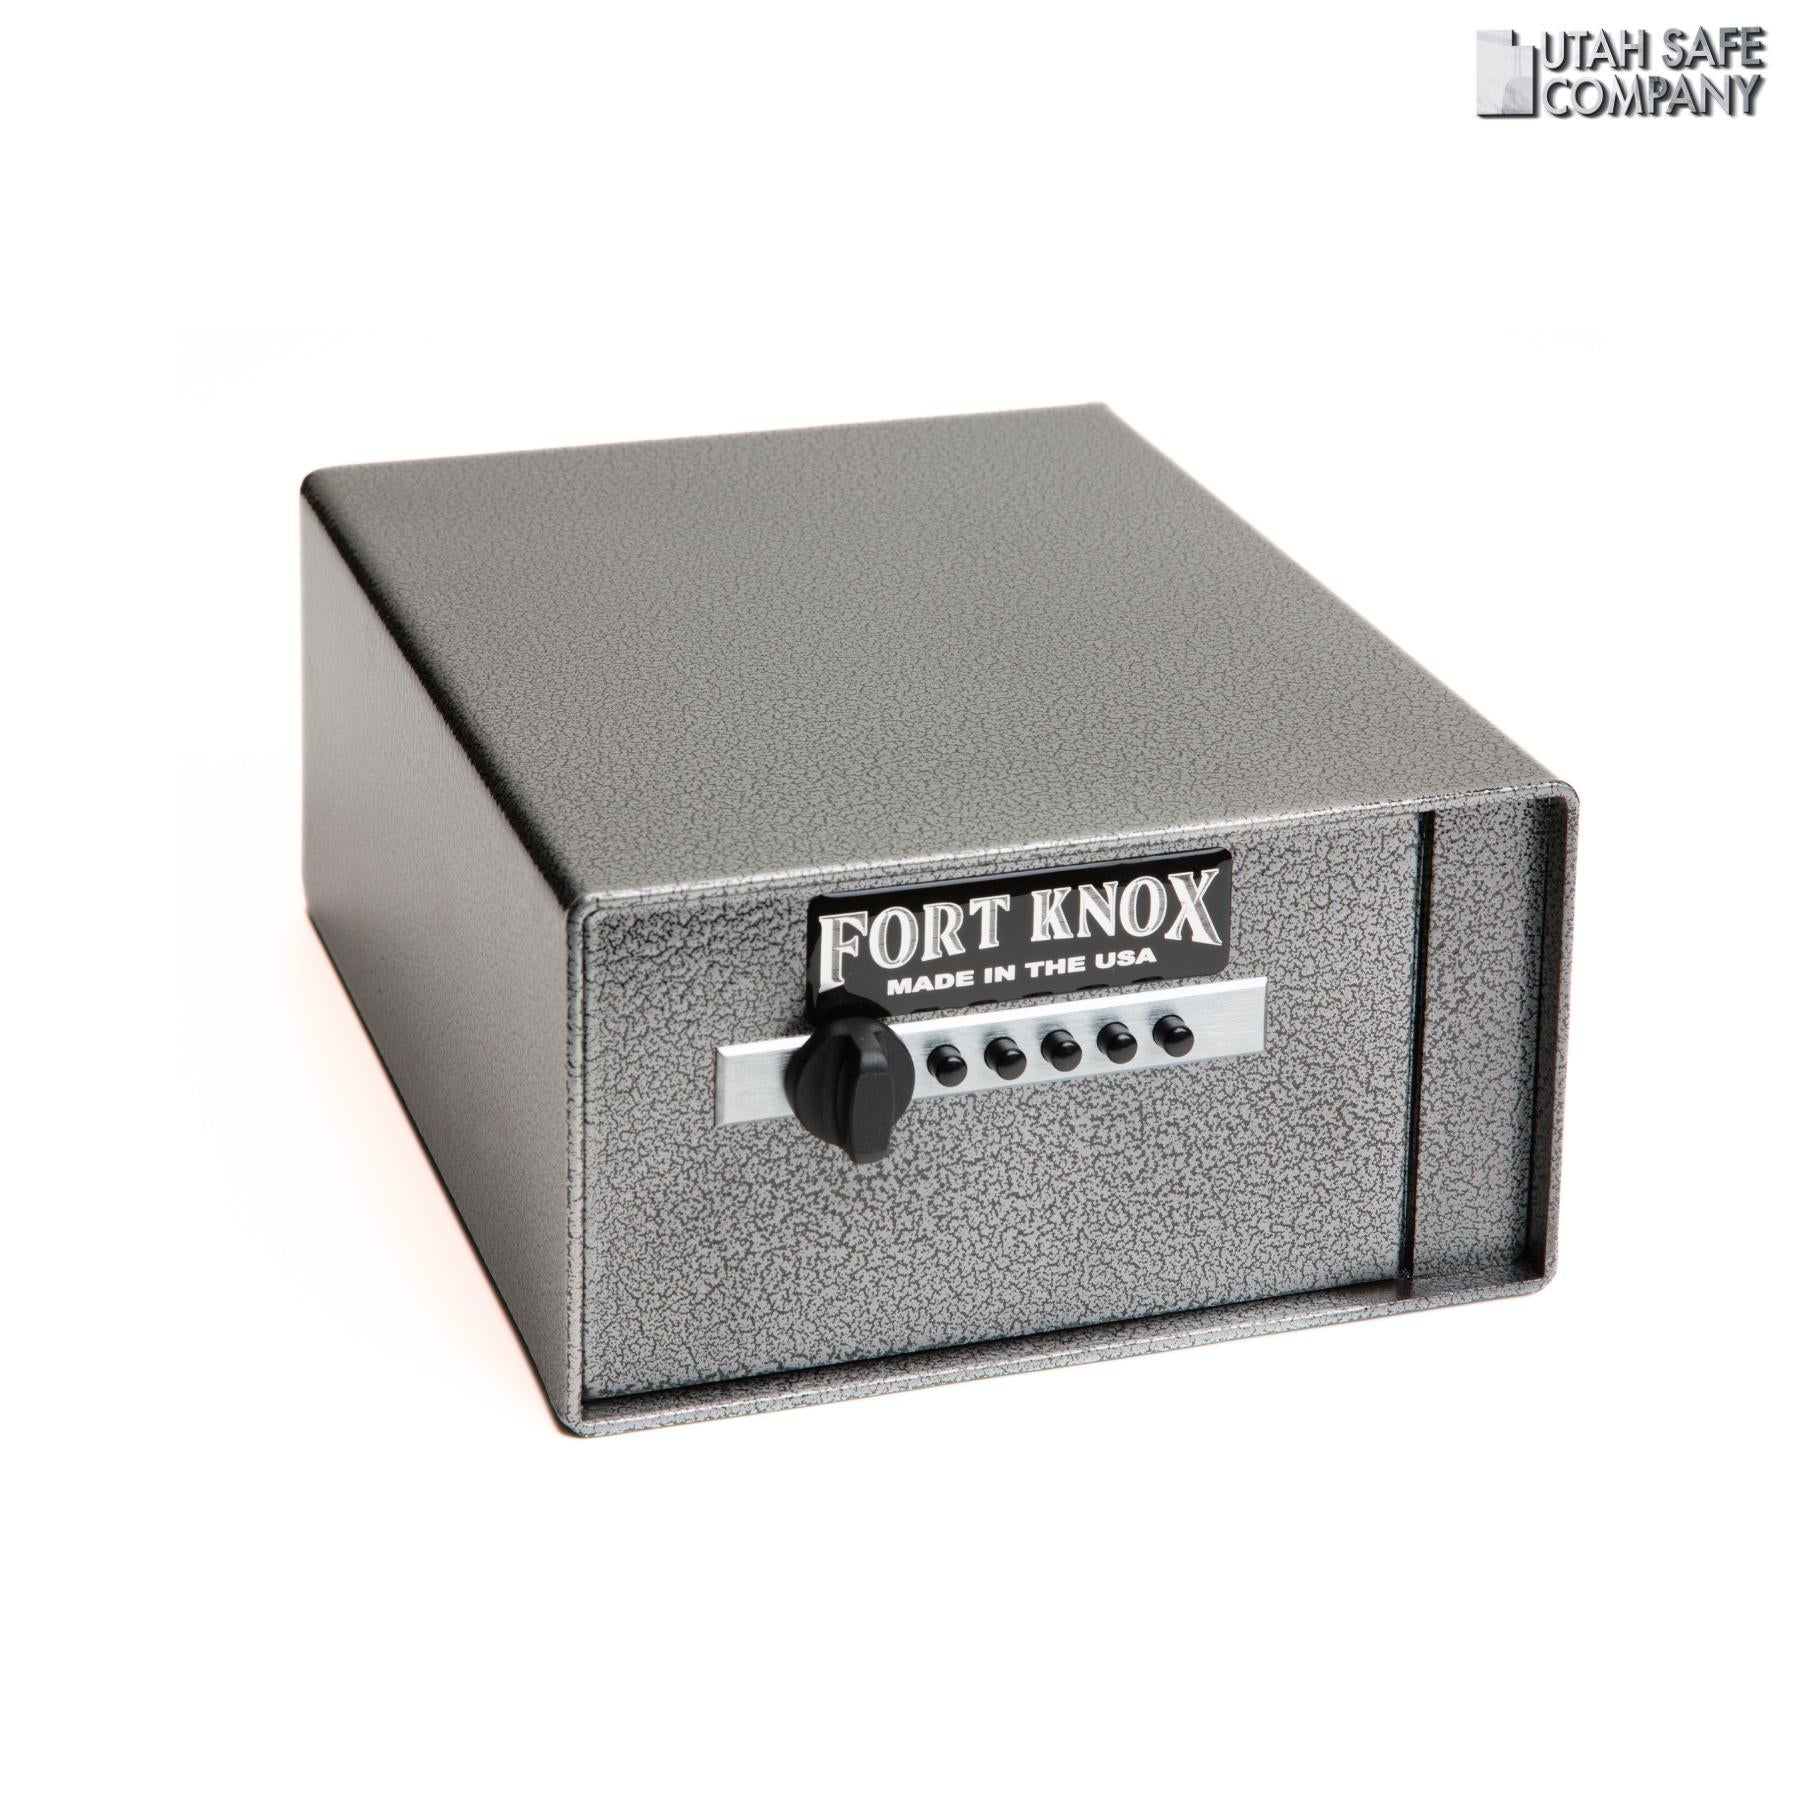 Fort Knox Personal Pistol Box PB